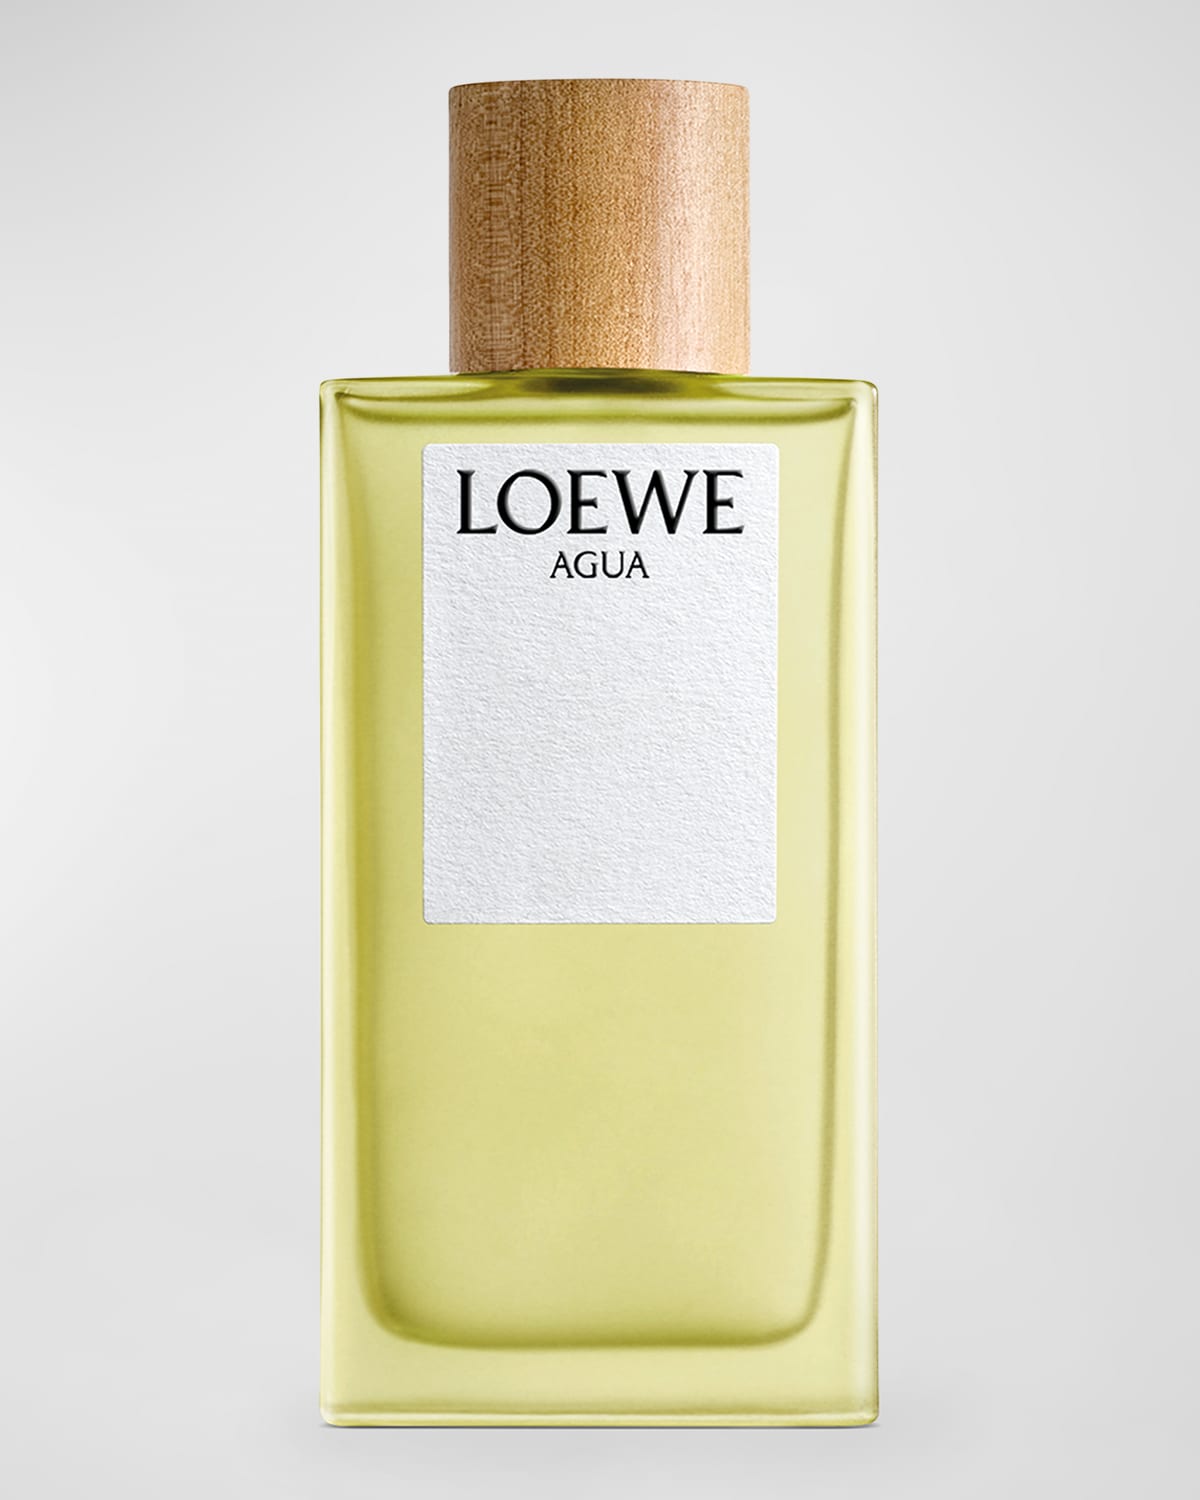 Loewe Agua Eau De Toilette, 5.0 Oz. In White